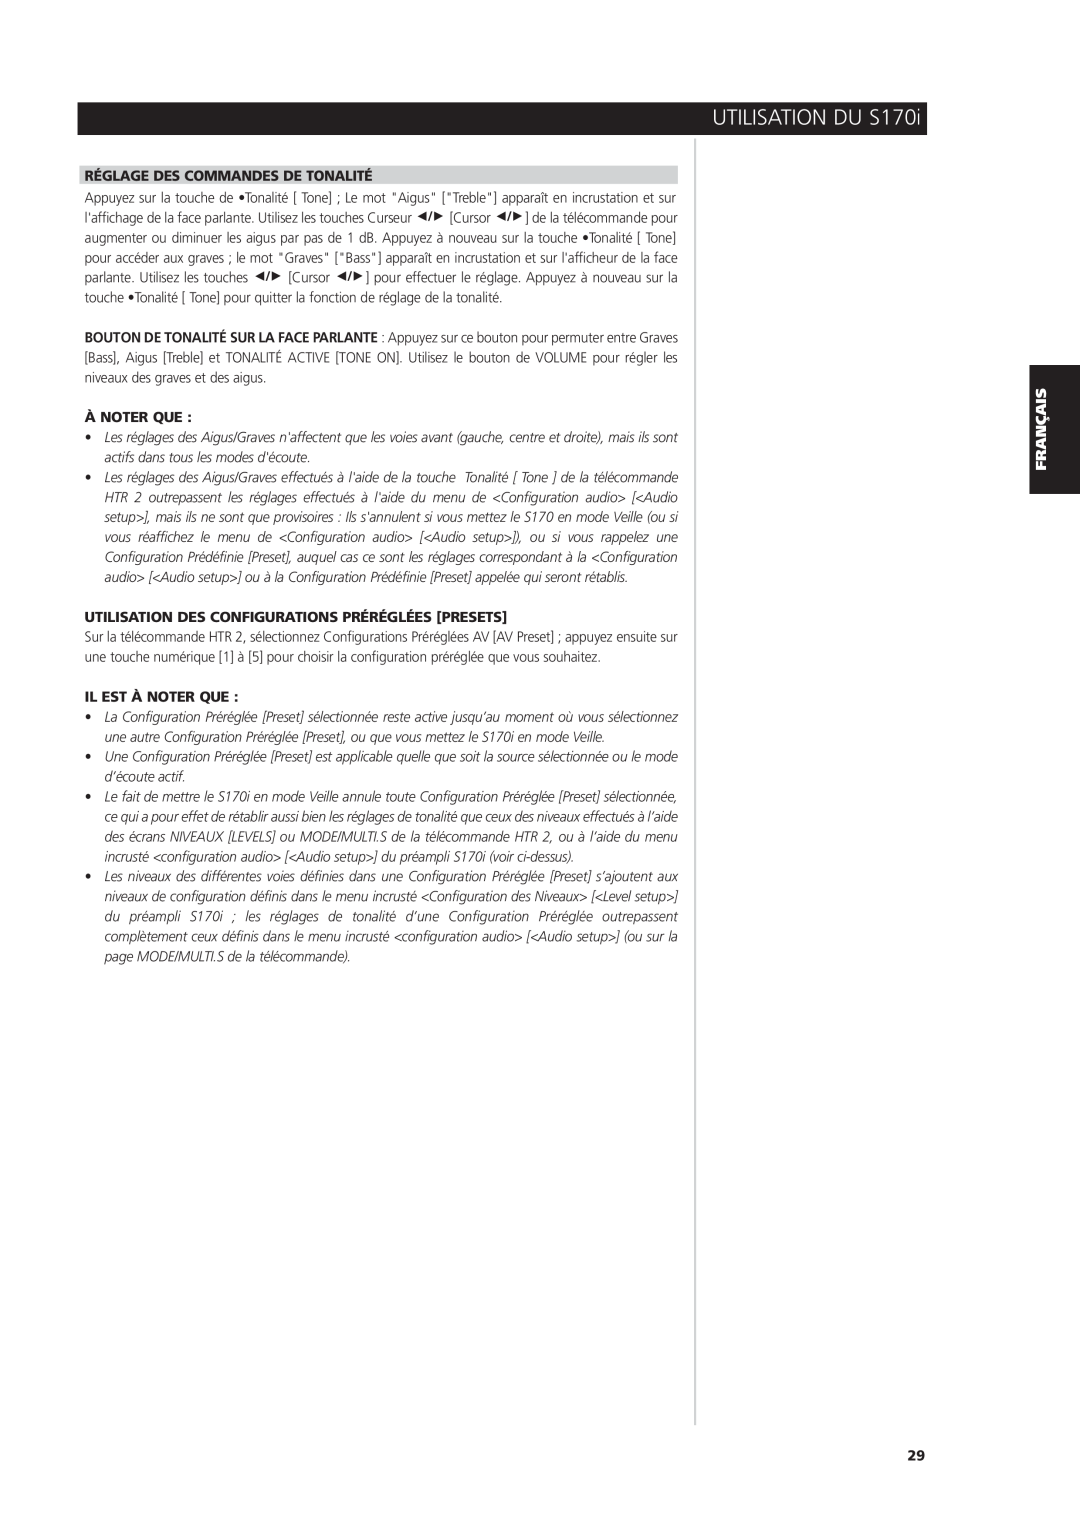 NAD S170iAV owner manual Réglage Des Commandes De Tonalité, À Noter Que, Utilisation Des Configurations Préréglées Presets 